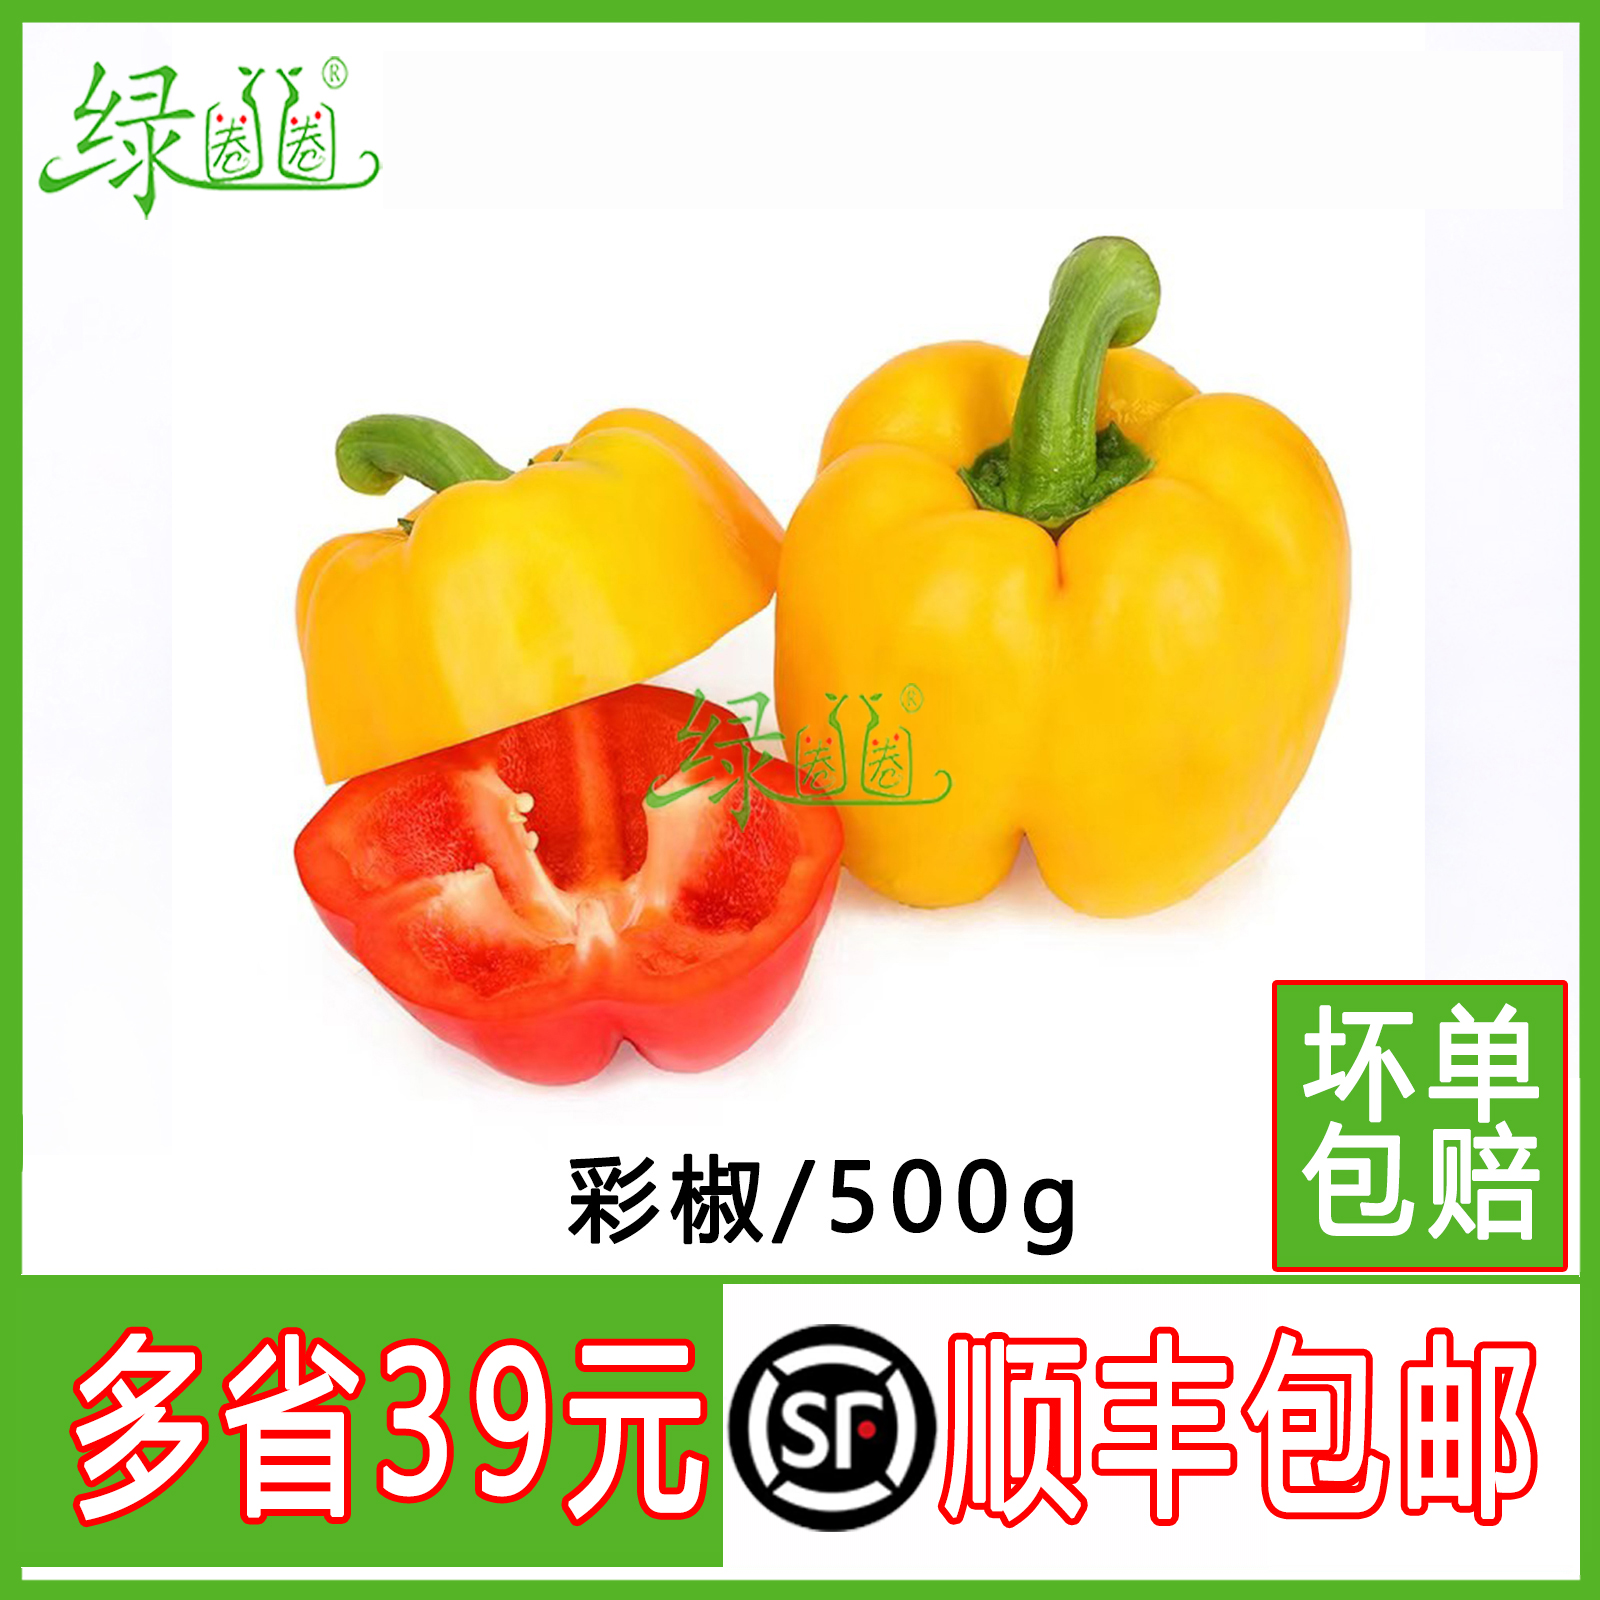 新鲜红黄彩椒 灯笼椒 圆椒 甜辣椒 蔬菜水果沙拉食材500g